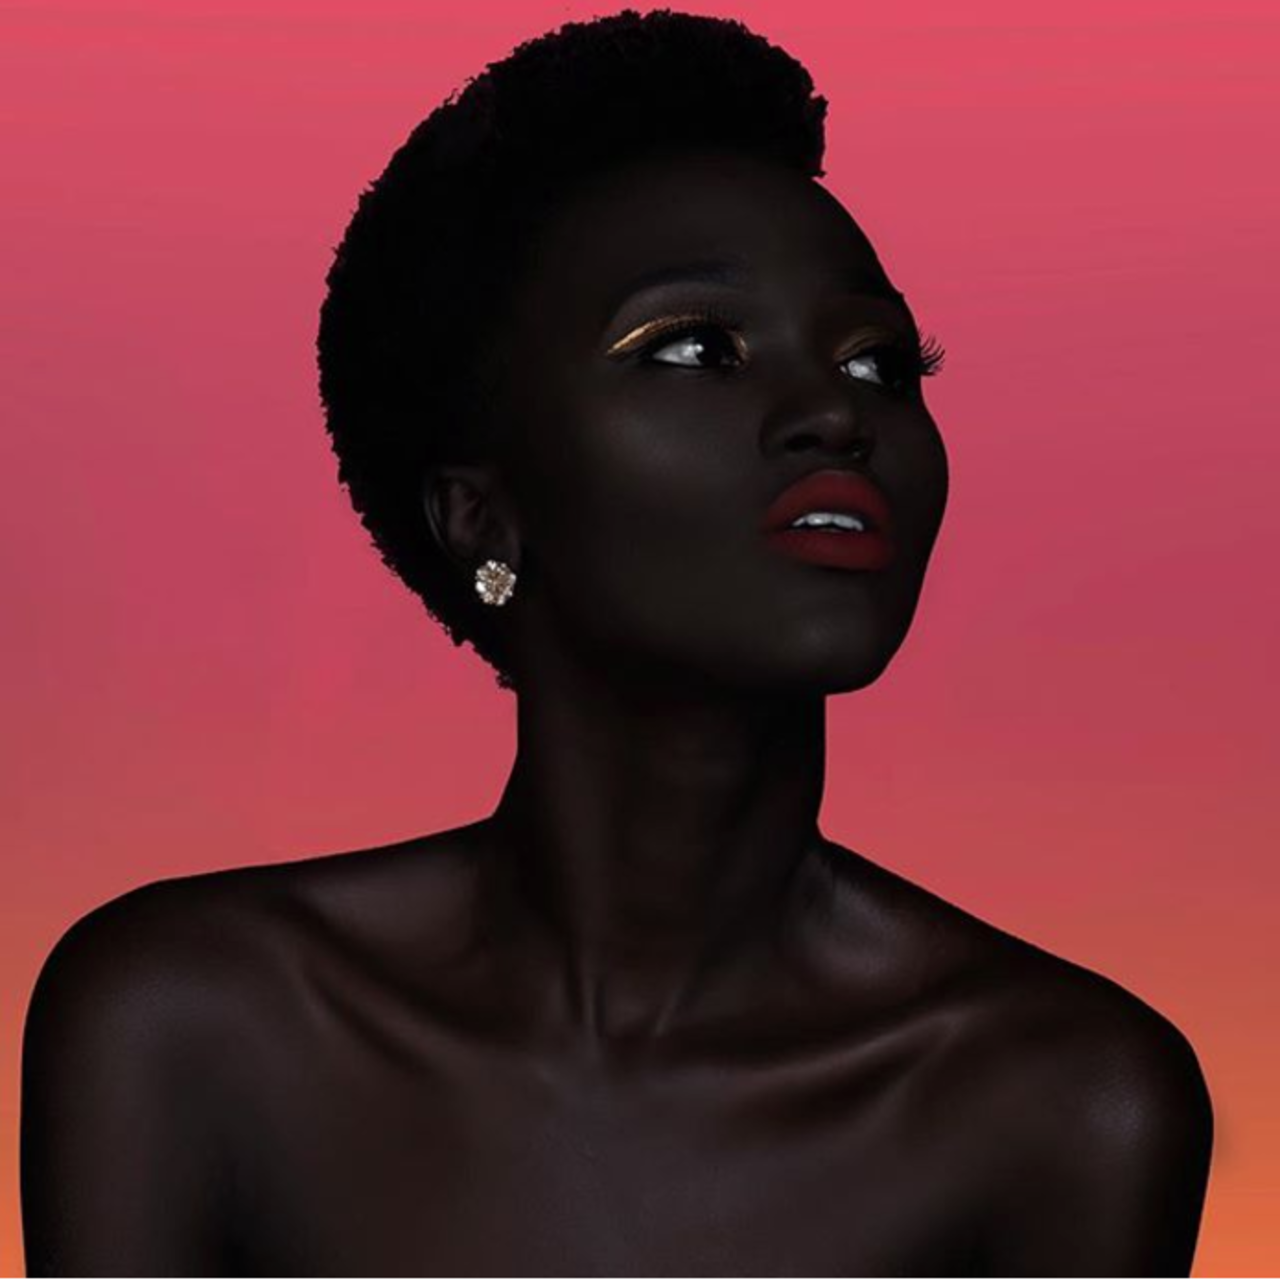 Негритянки боль. Няким Гатвеч. Королева тьмы - Ньяким Гатвех - модель из Южного Судана. Няким Гатвех - "Королева тьмы" из Южного Судана. Ньяким Гатвеч модель.